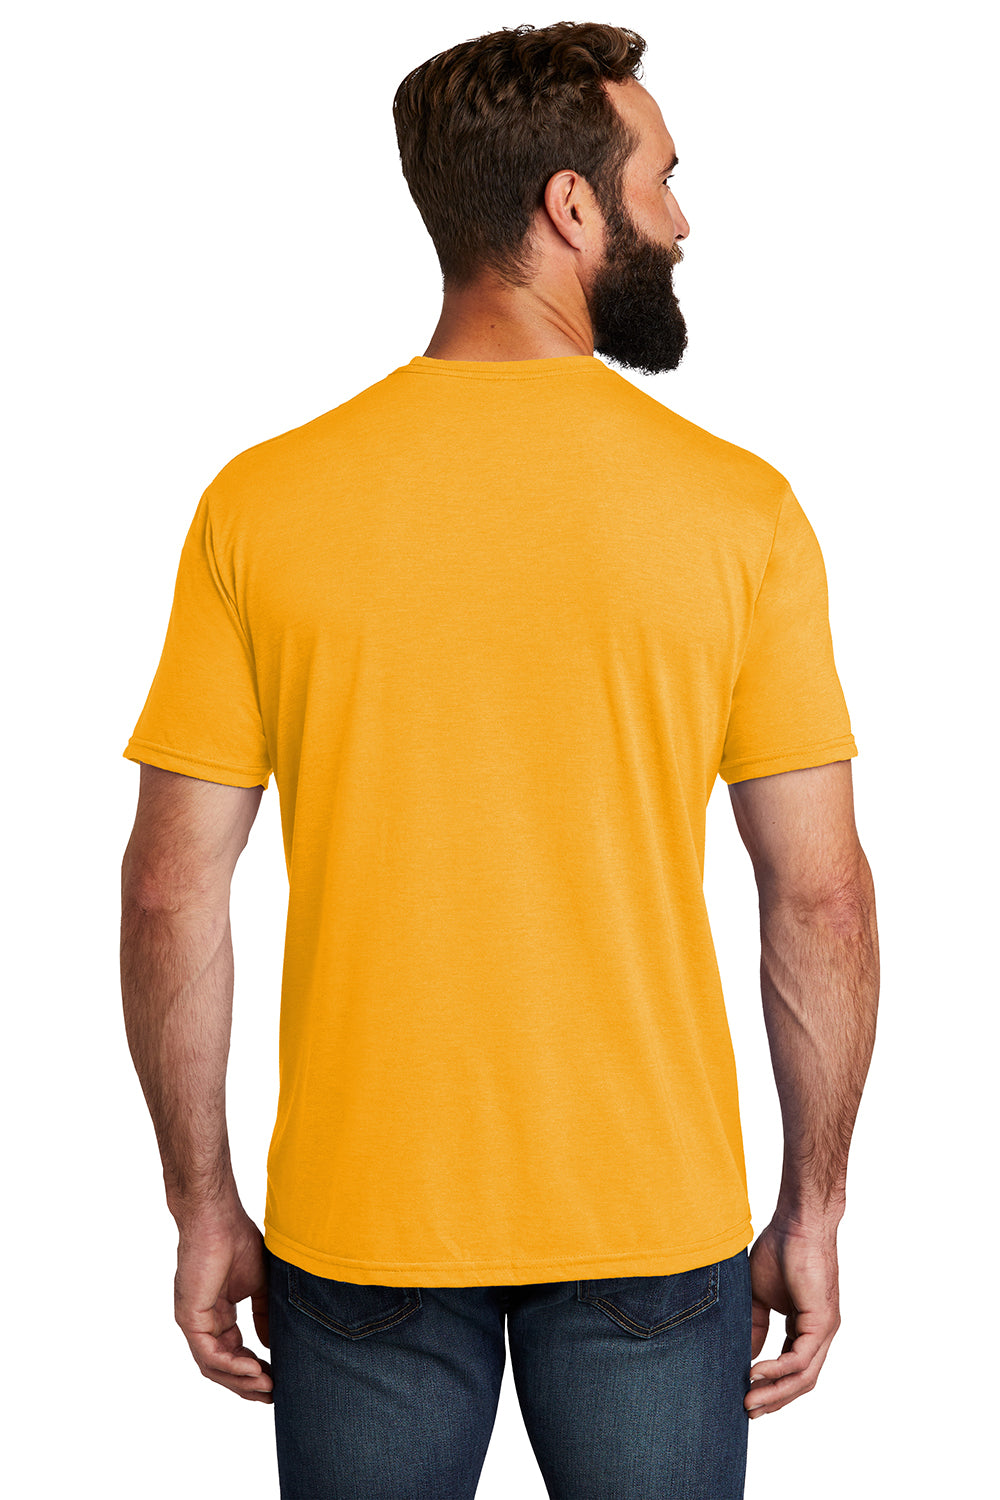 Allmade AL2004 Mens Short Sleeve Crewneck T-Shirt Orange You Fancy Model Back